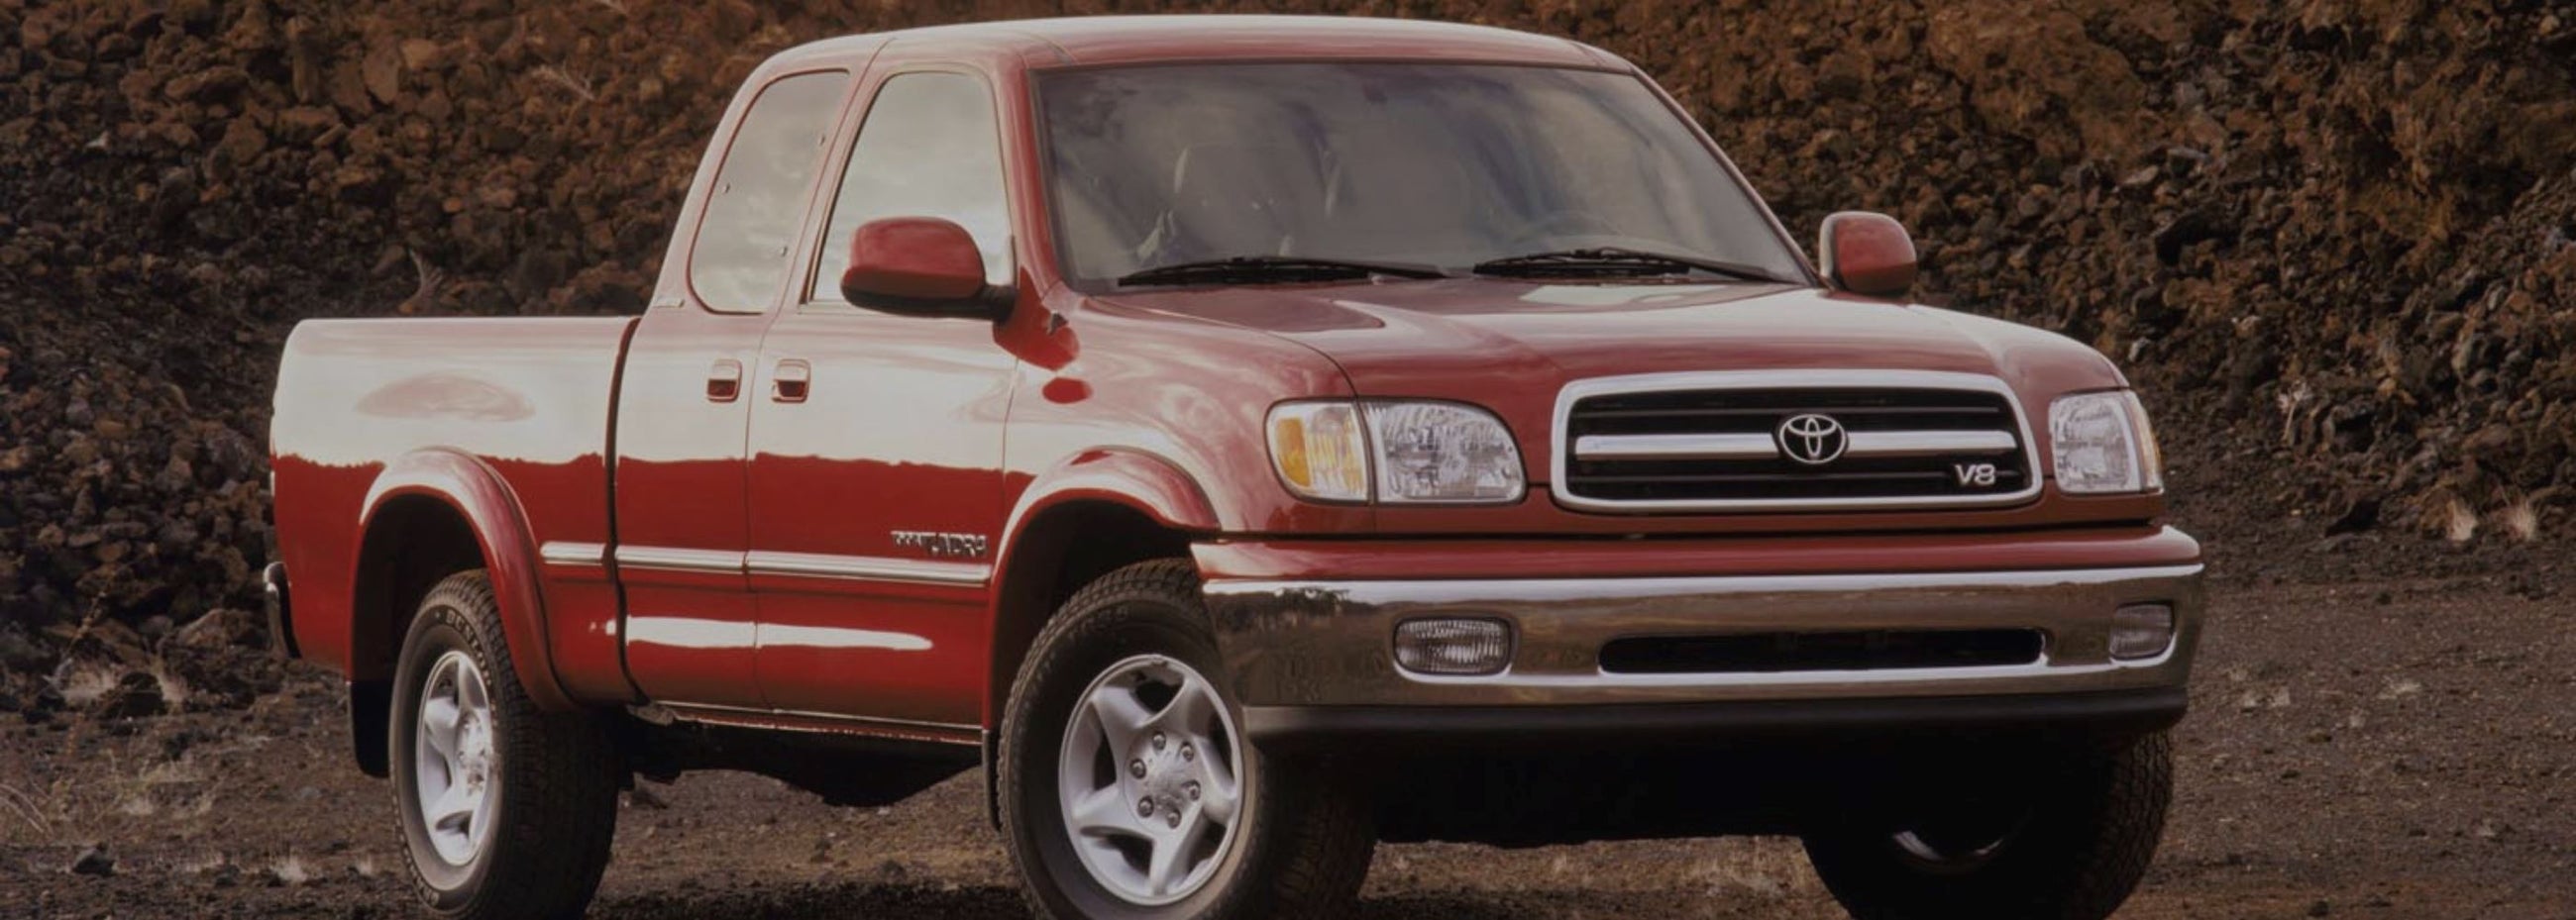 Toyota - Tundra 2000 - 2006